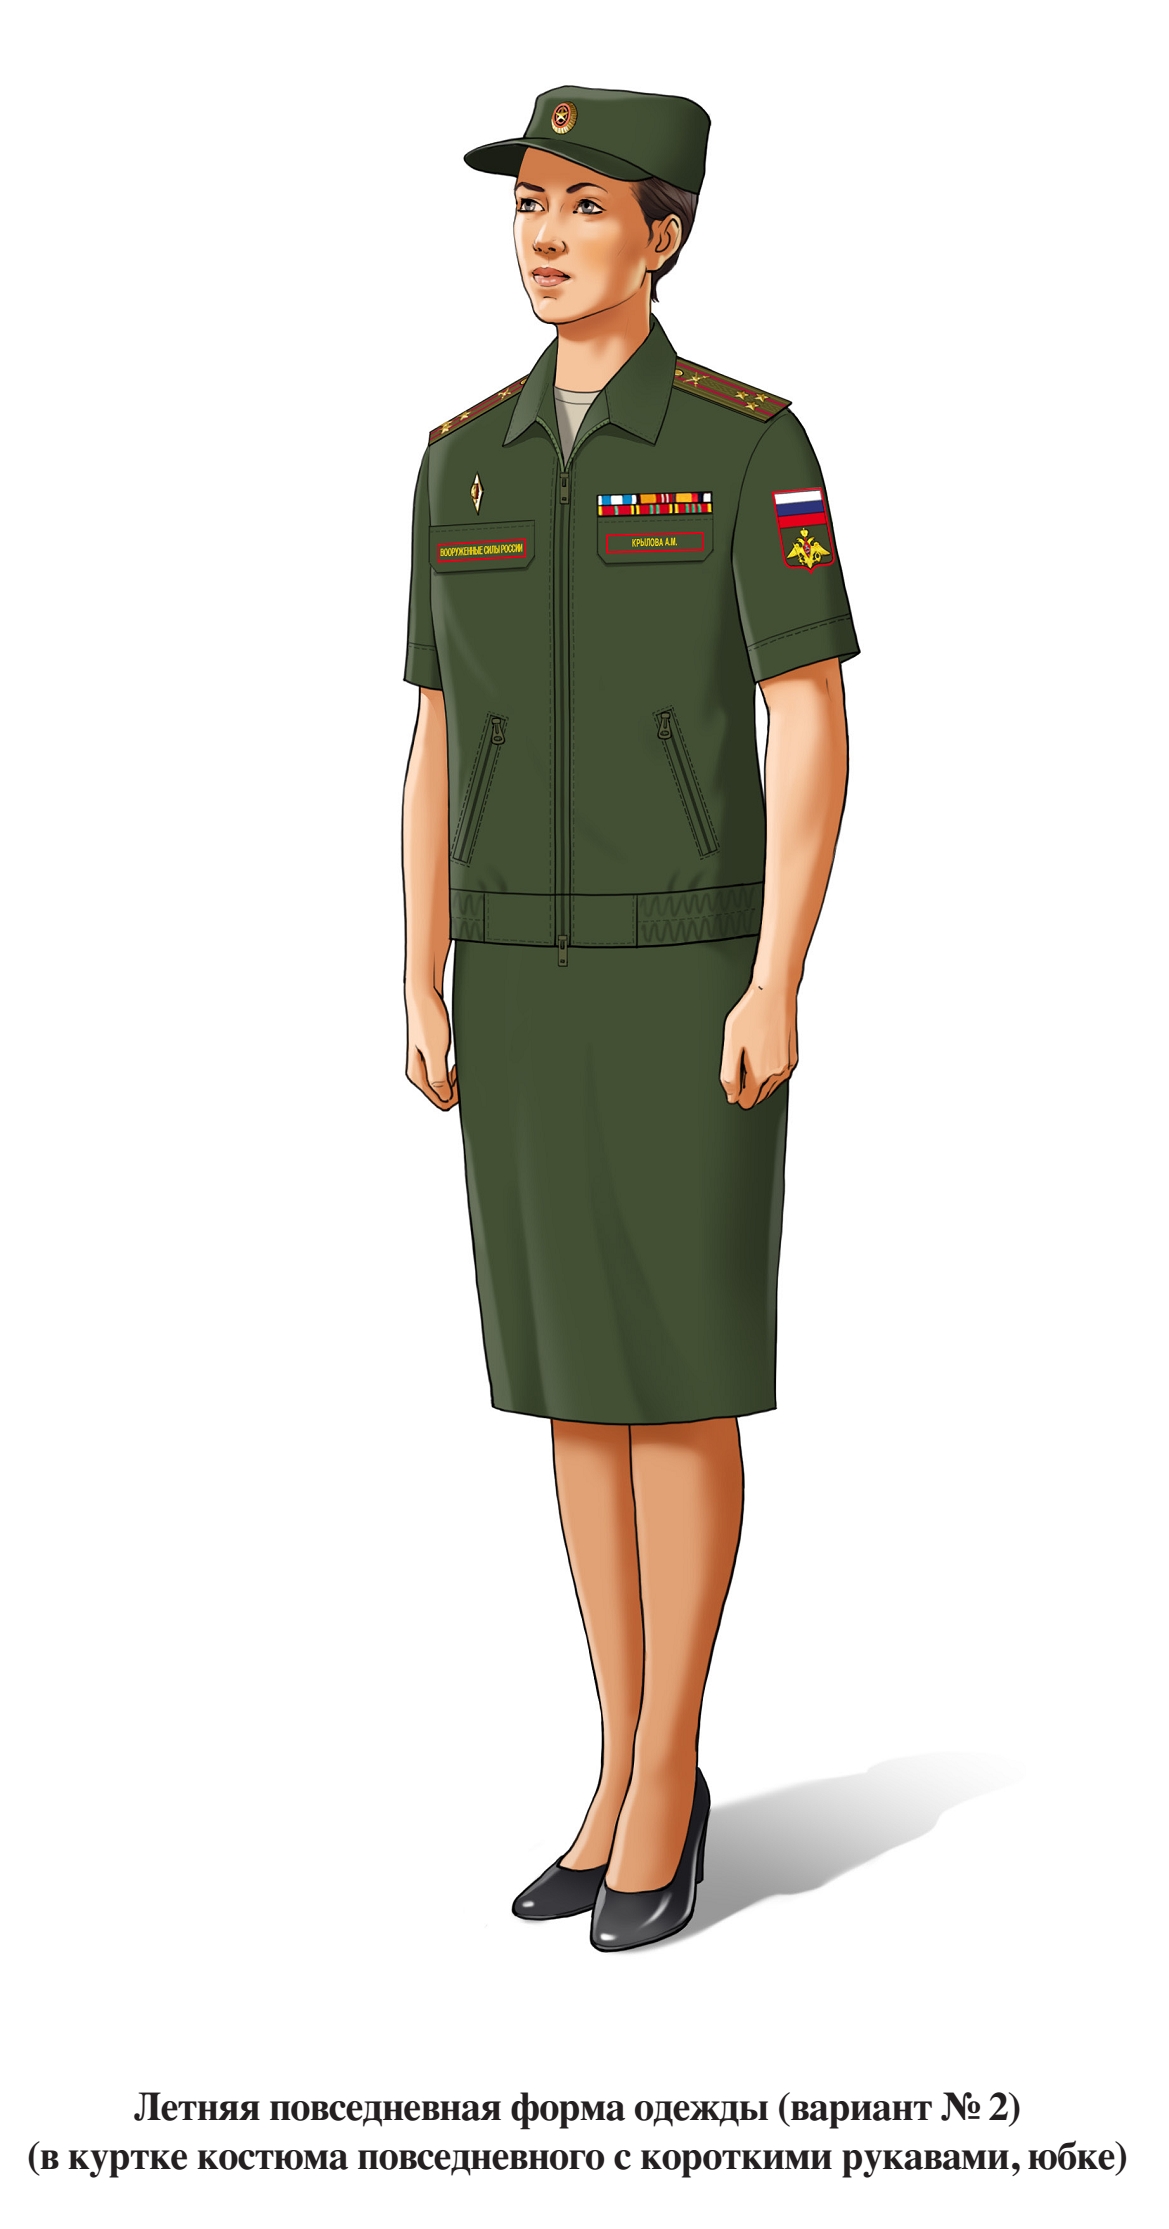 Летняя повседневная офисная форма военнослужащих женского пола, в юбке и куртке с коротким рукавом